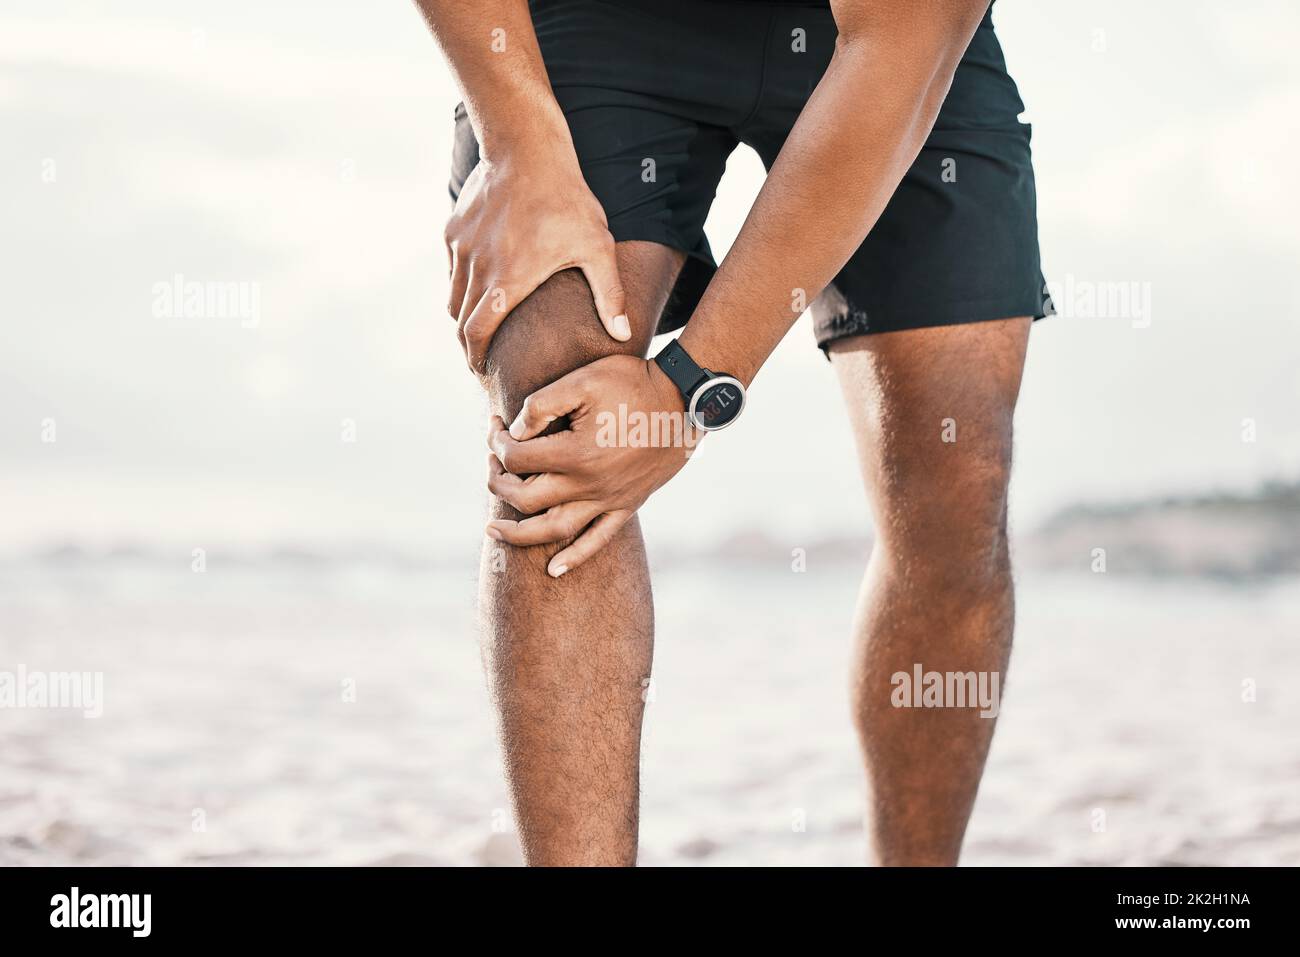 Sieht aus wie kein Laufen mehr. Kurzer Schuss eines nicht erkennbaren männlichen Athleten, der sein Knie vor Schmerzen beim Training am Strand hält. Stockfoto